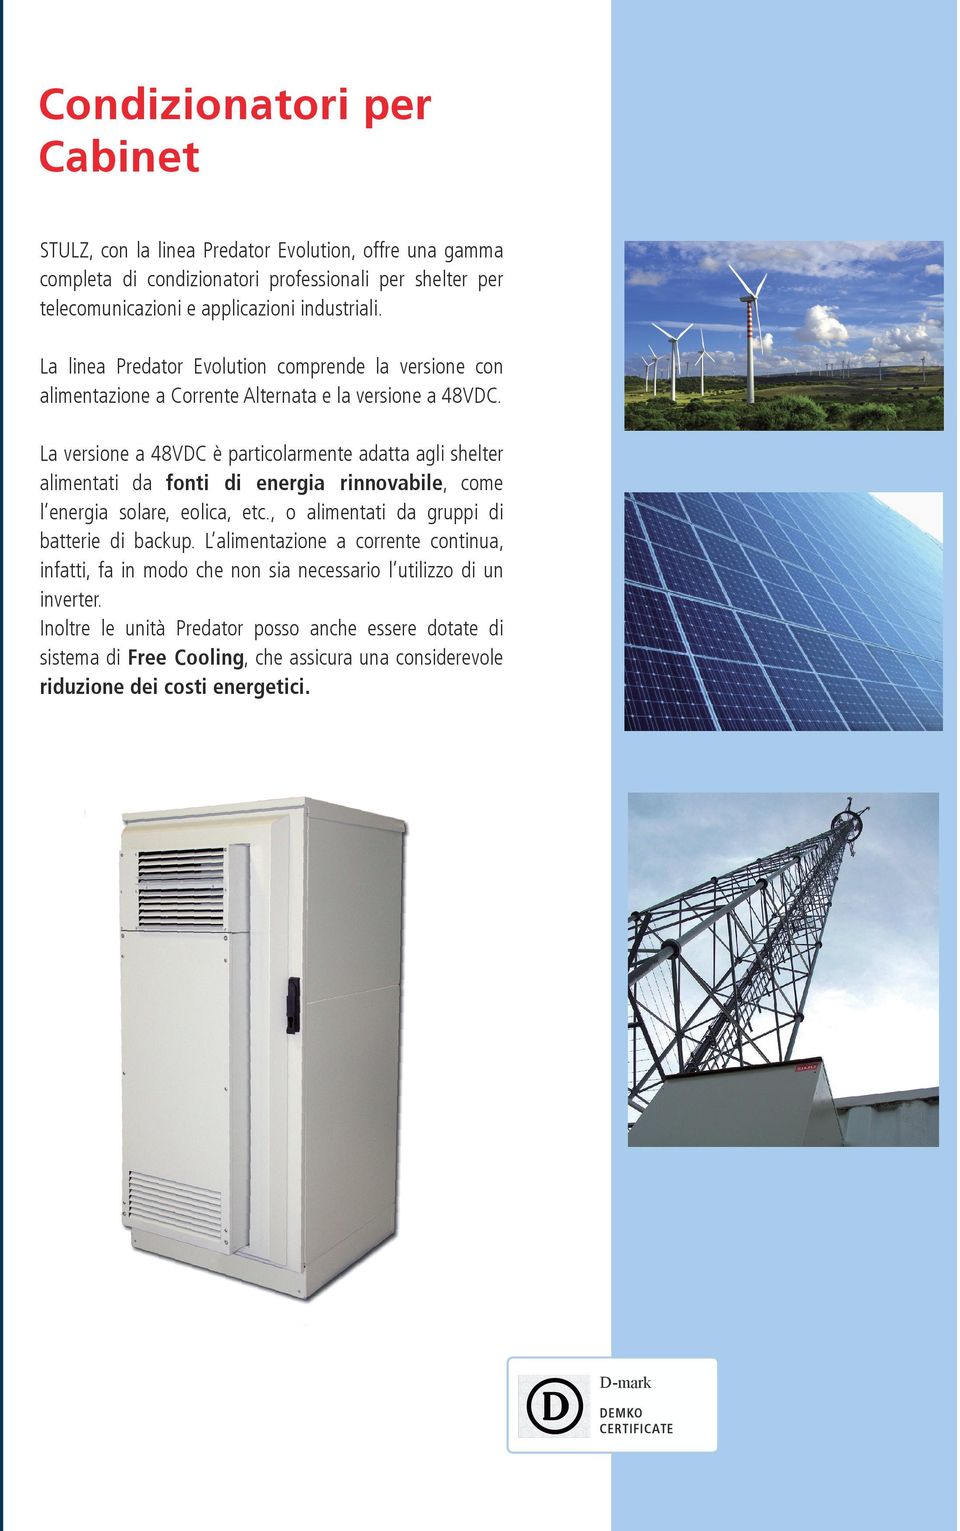 La versione a 48VDC è particolarmente adatta agli shelter alimentati da fonti di energia rinnovabile, come l energia solare, eolica, etc., o alimentati da gruppi di batterie di backup.